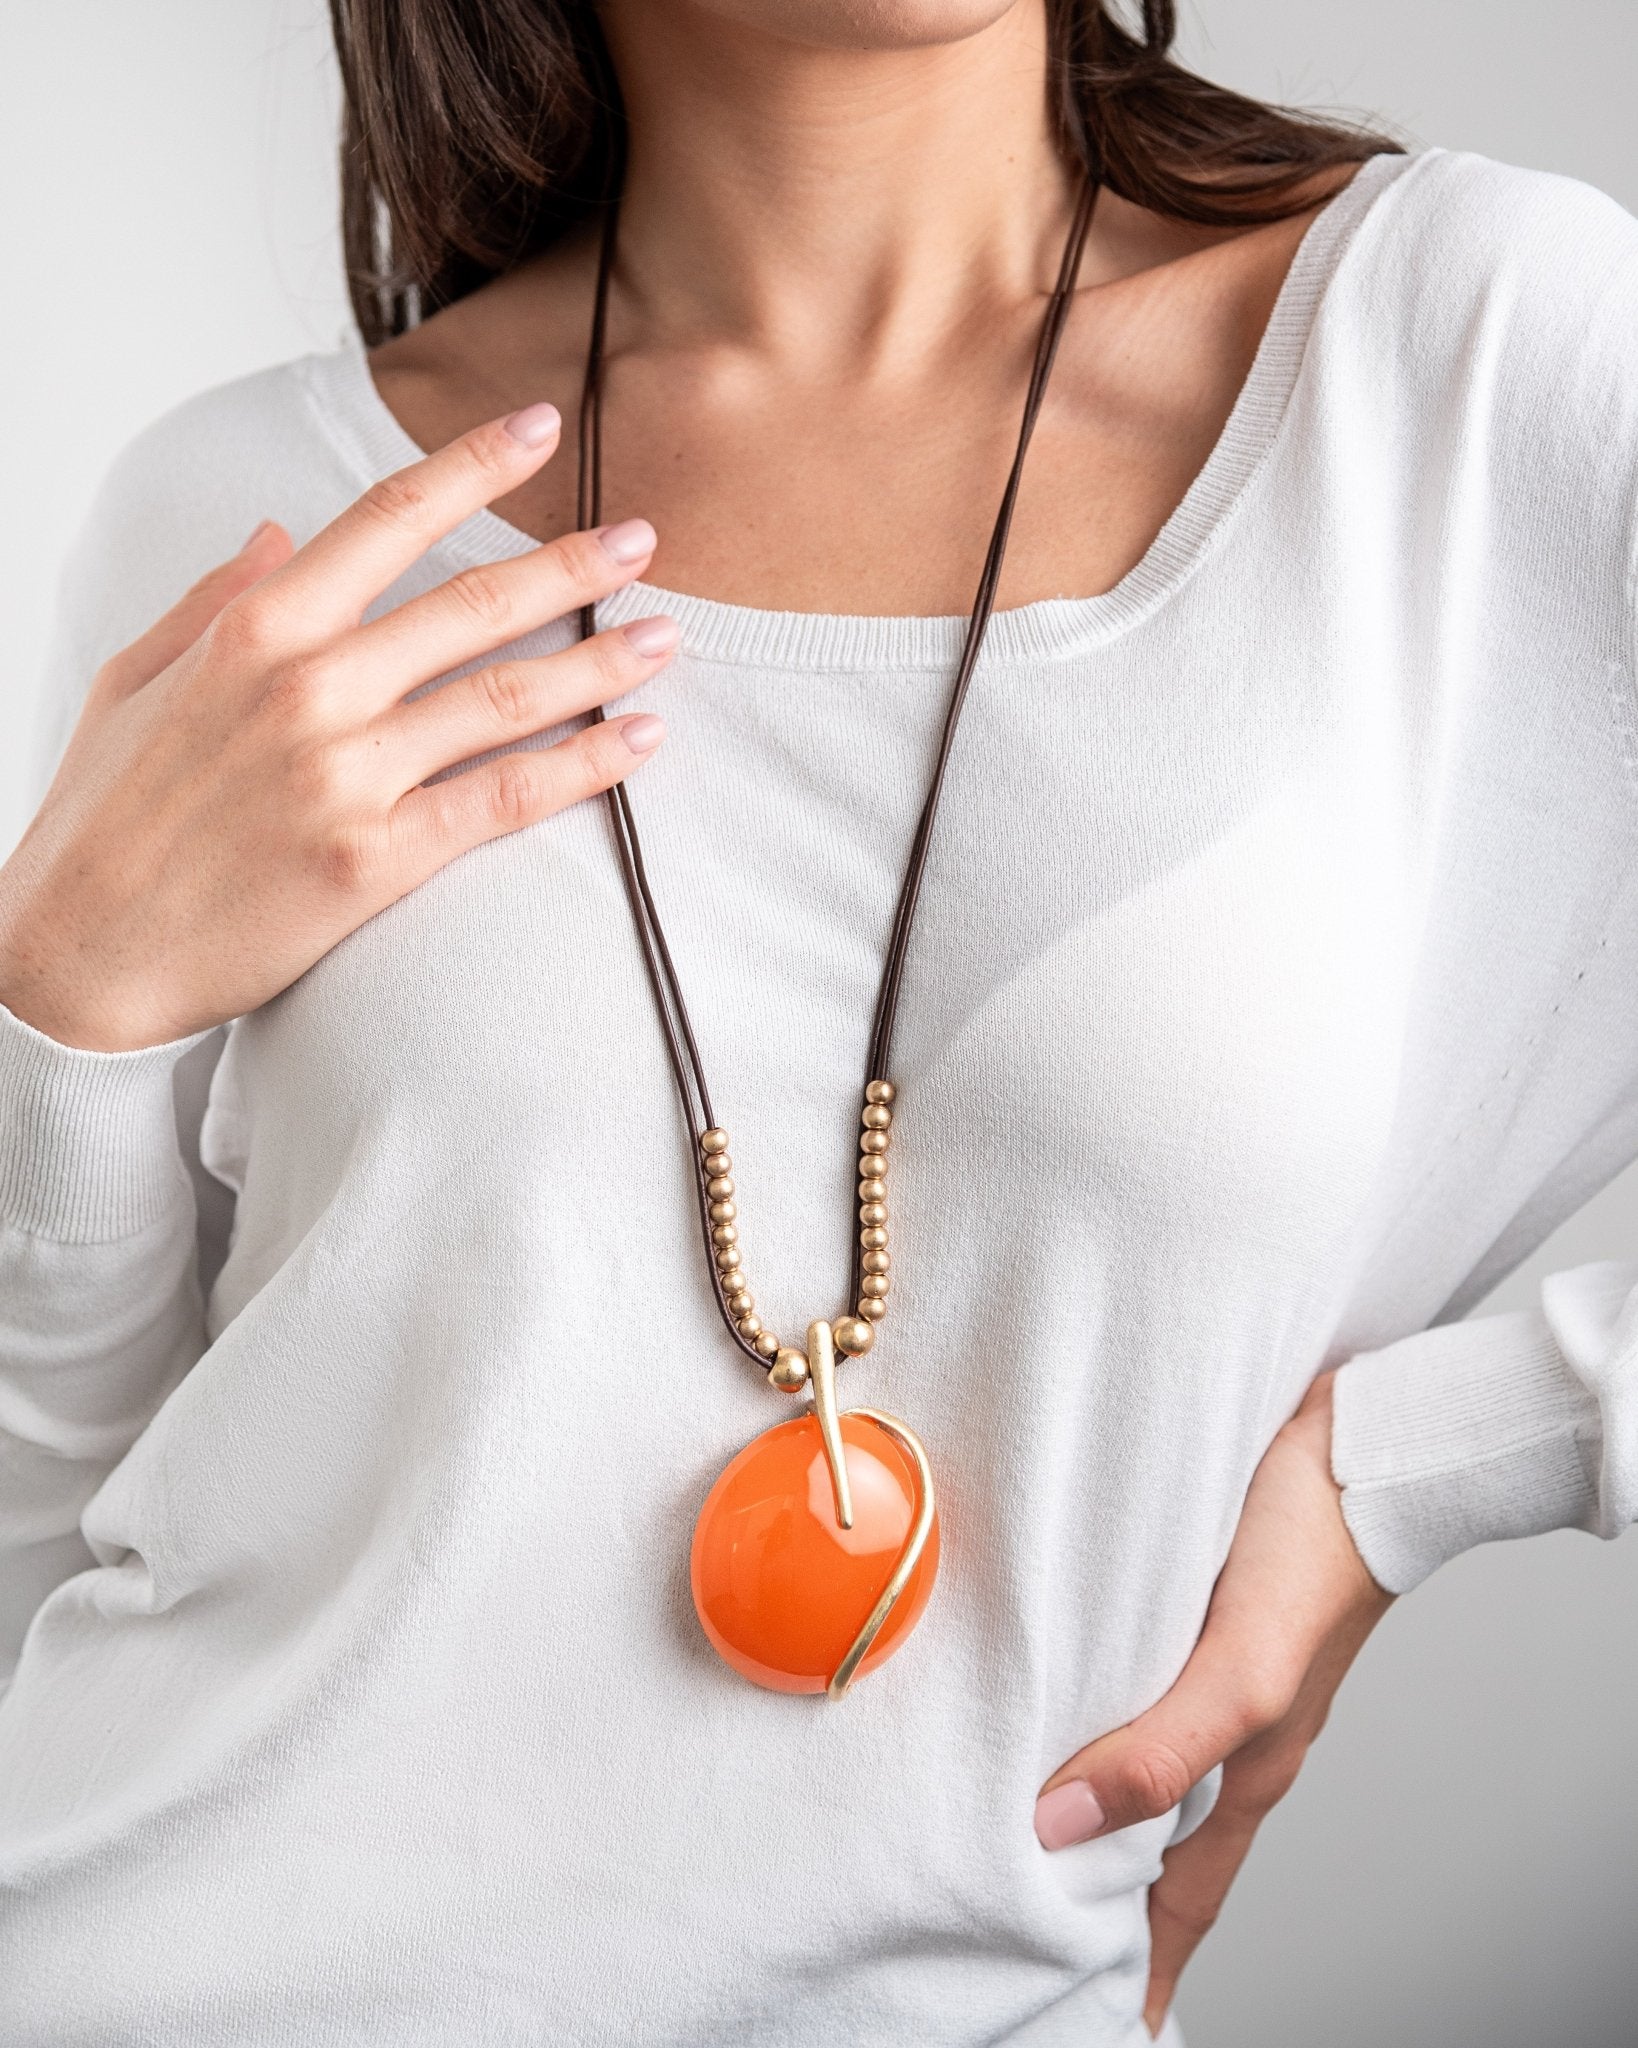 Collana lunga con laccio nero, pendente circolare in resina arancio - Mya Accessories